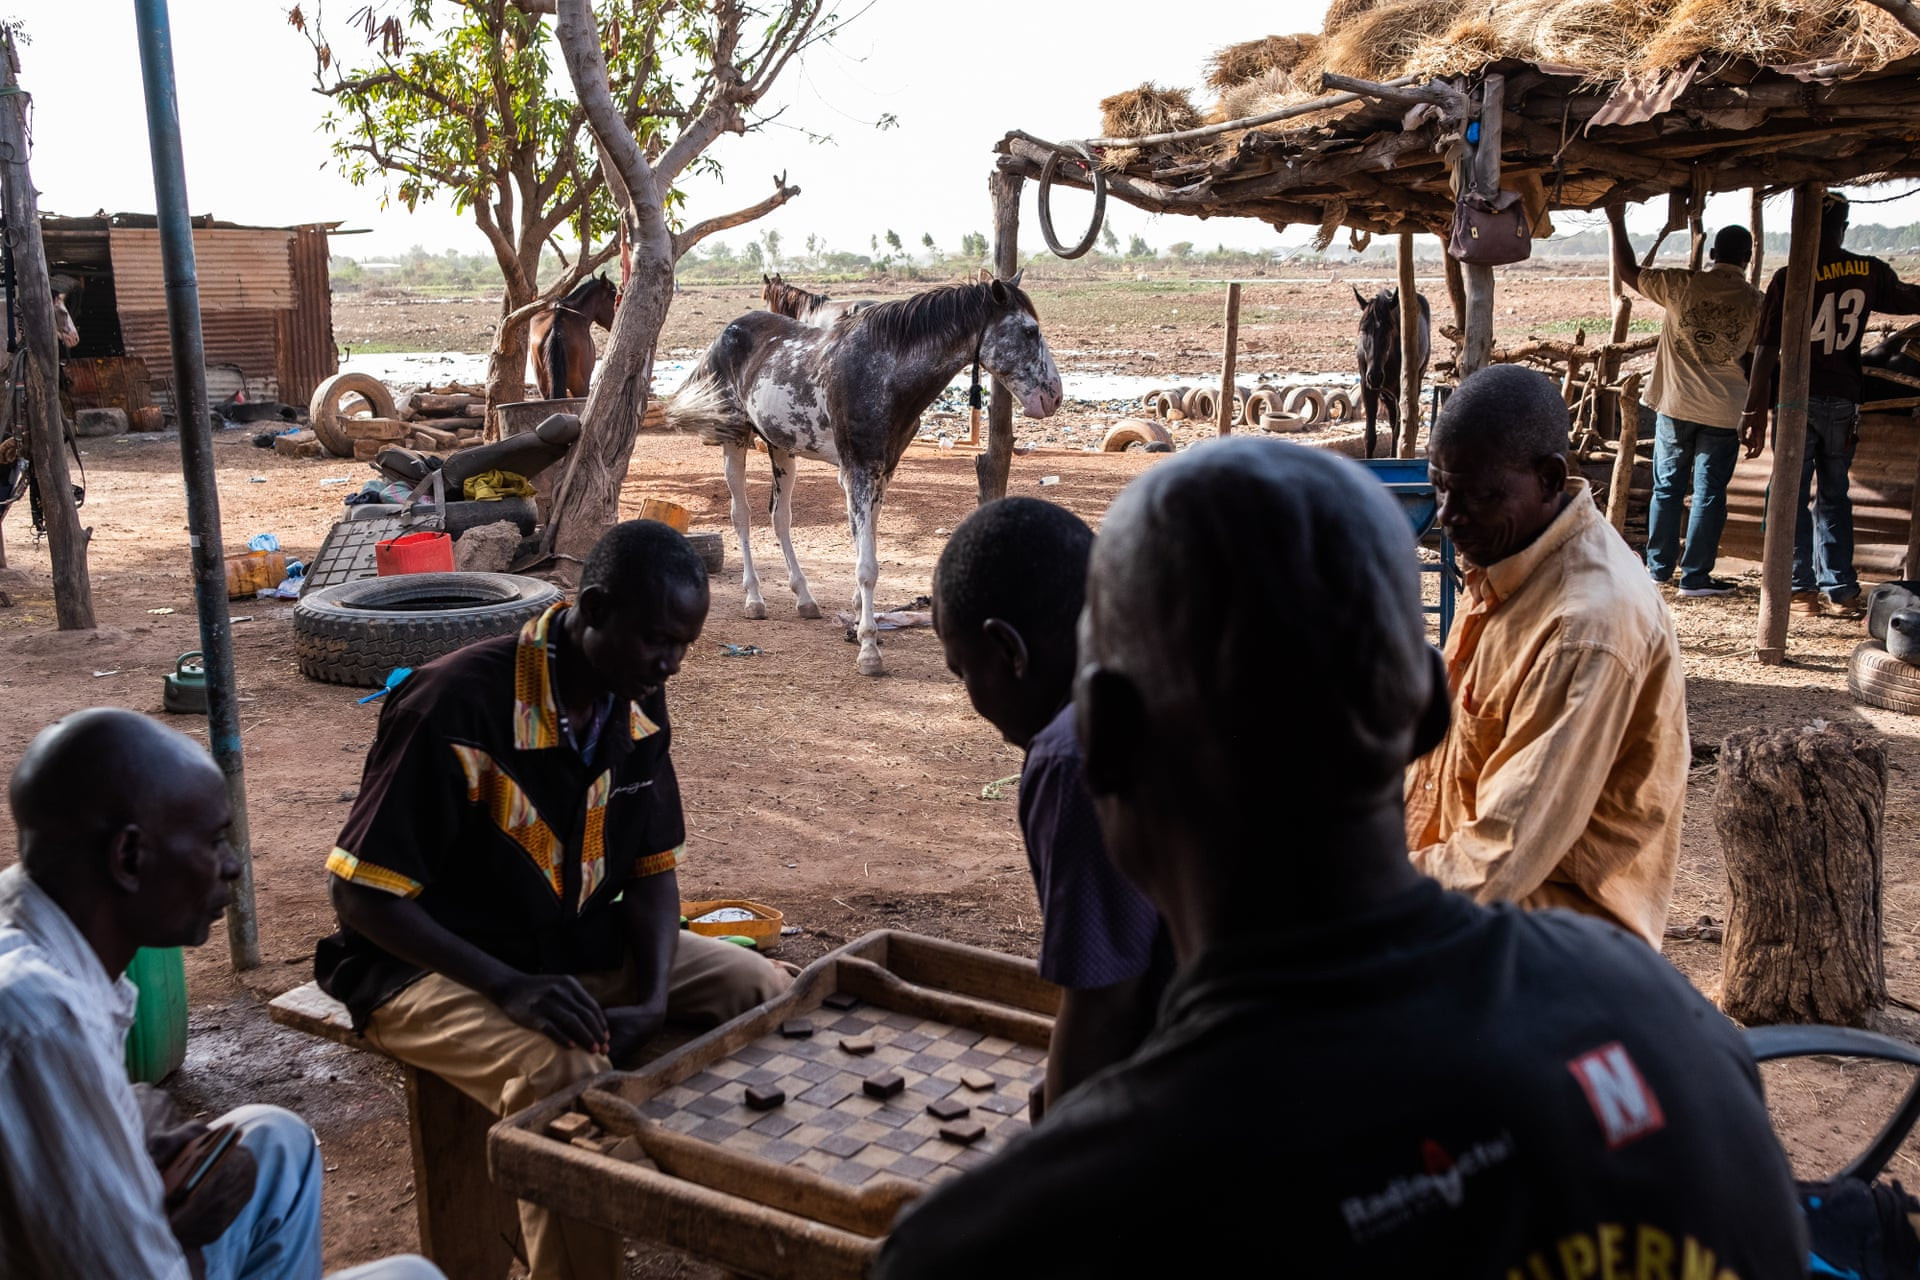 Những người đàn ông chơi cờ đam dưới bóng râm của một căn lều lợp tôn bên cạnh chuồng ngựa chung của Abdo, nơi họ chăm sóc gần 30 con ngựa. Ảnh: Guy Peterson / The Guardian.